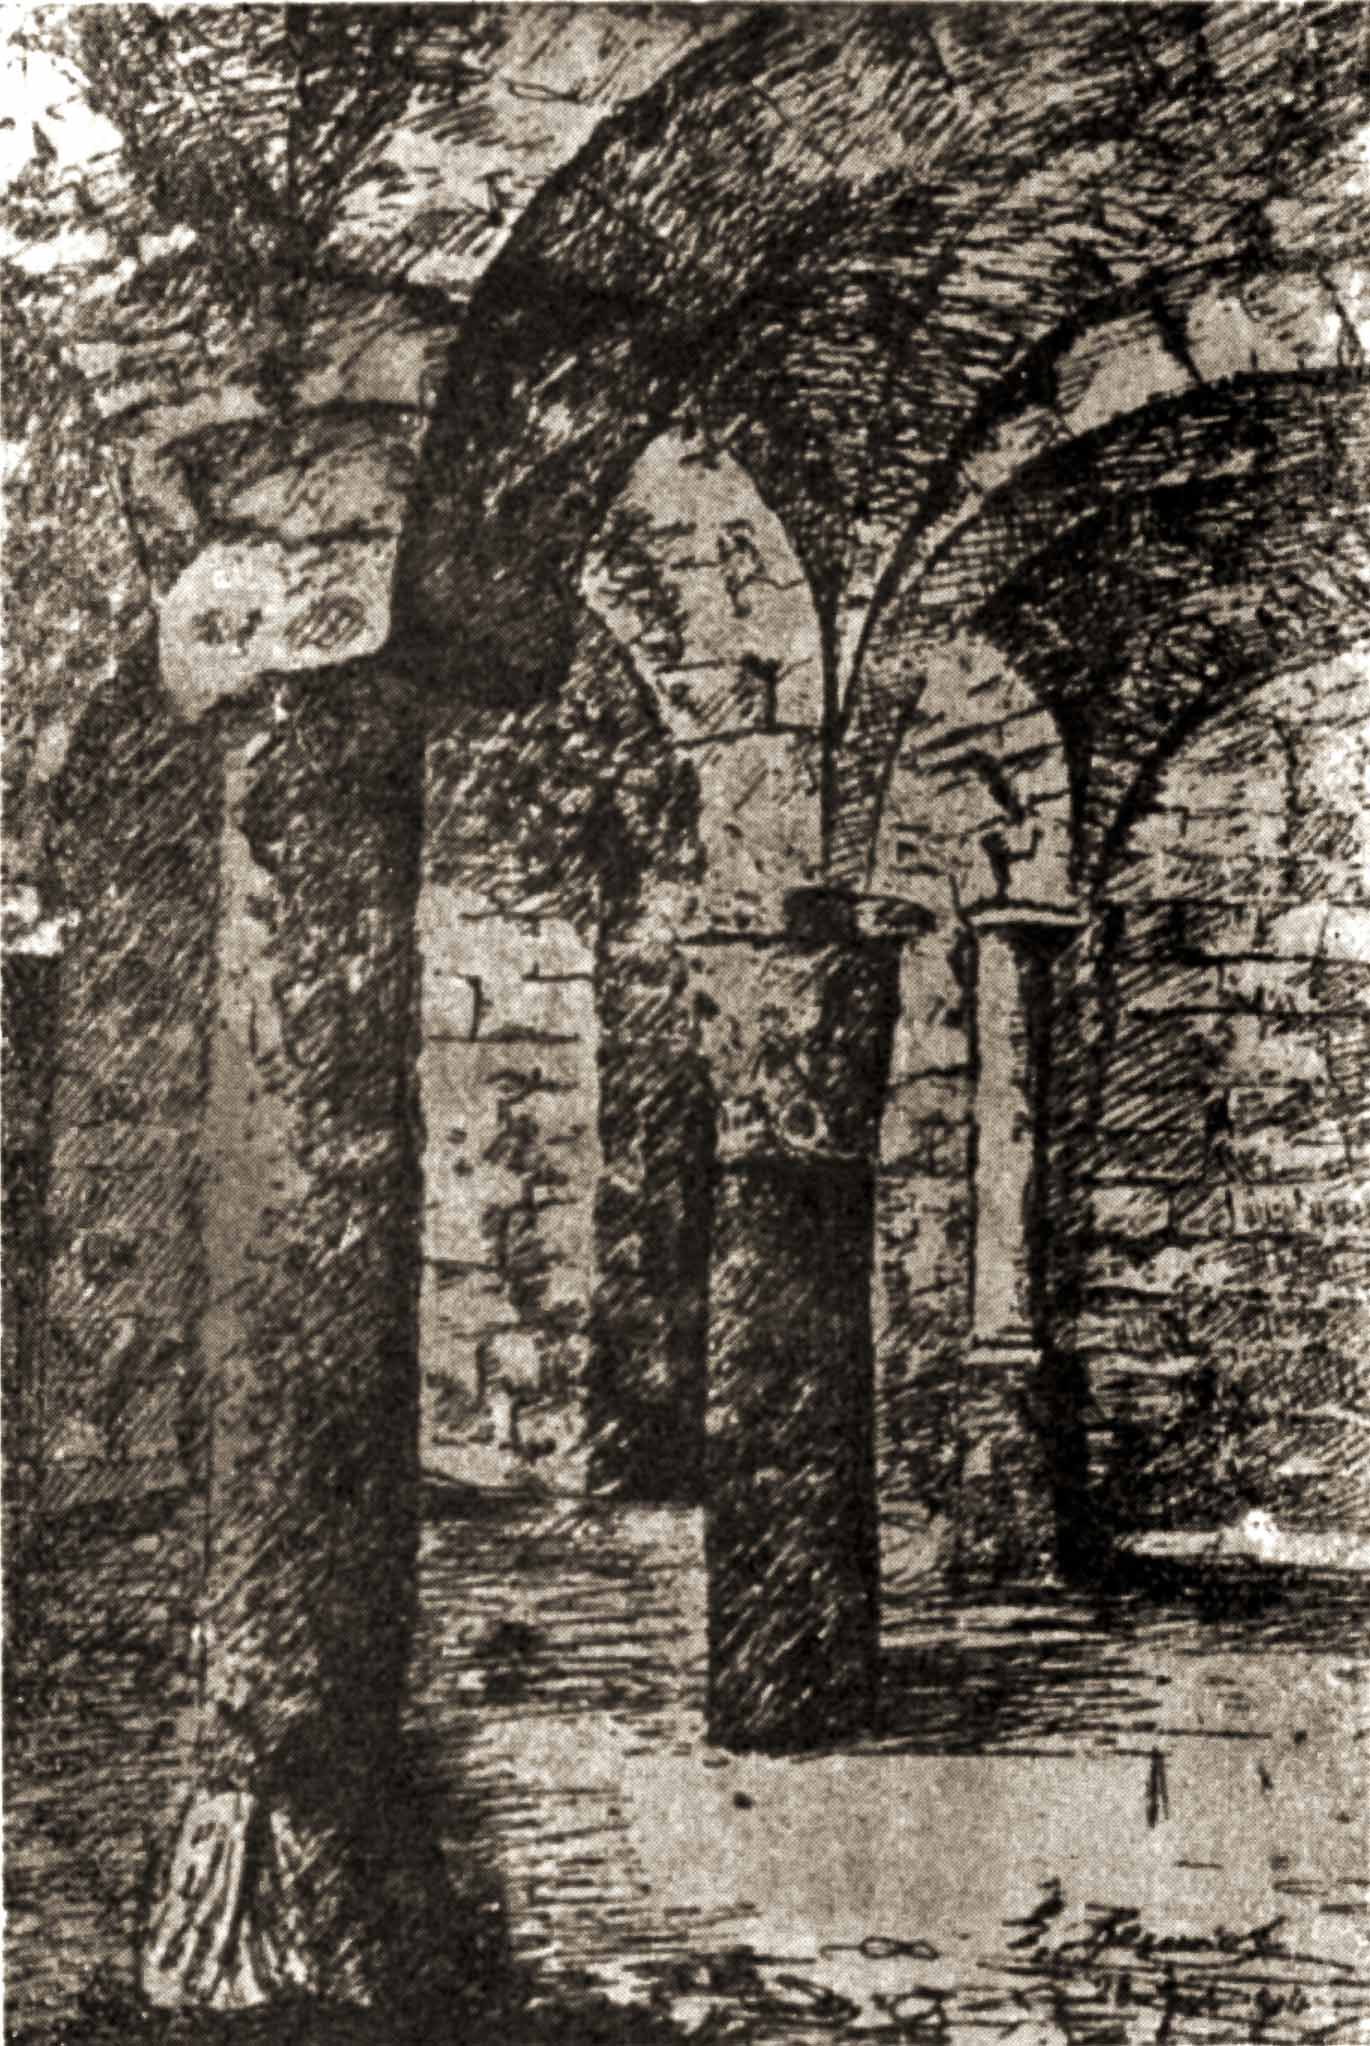 Prnao della cripta - 1903